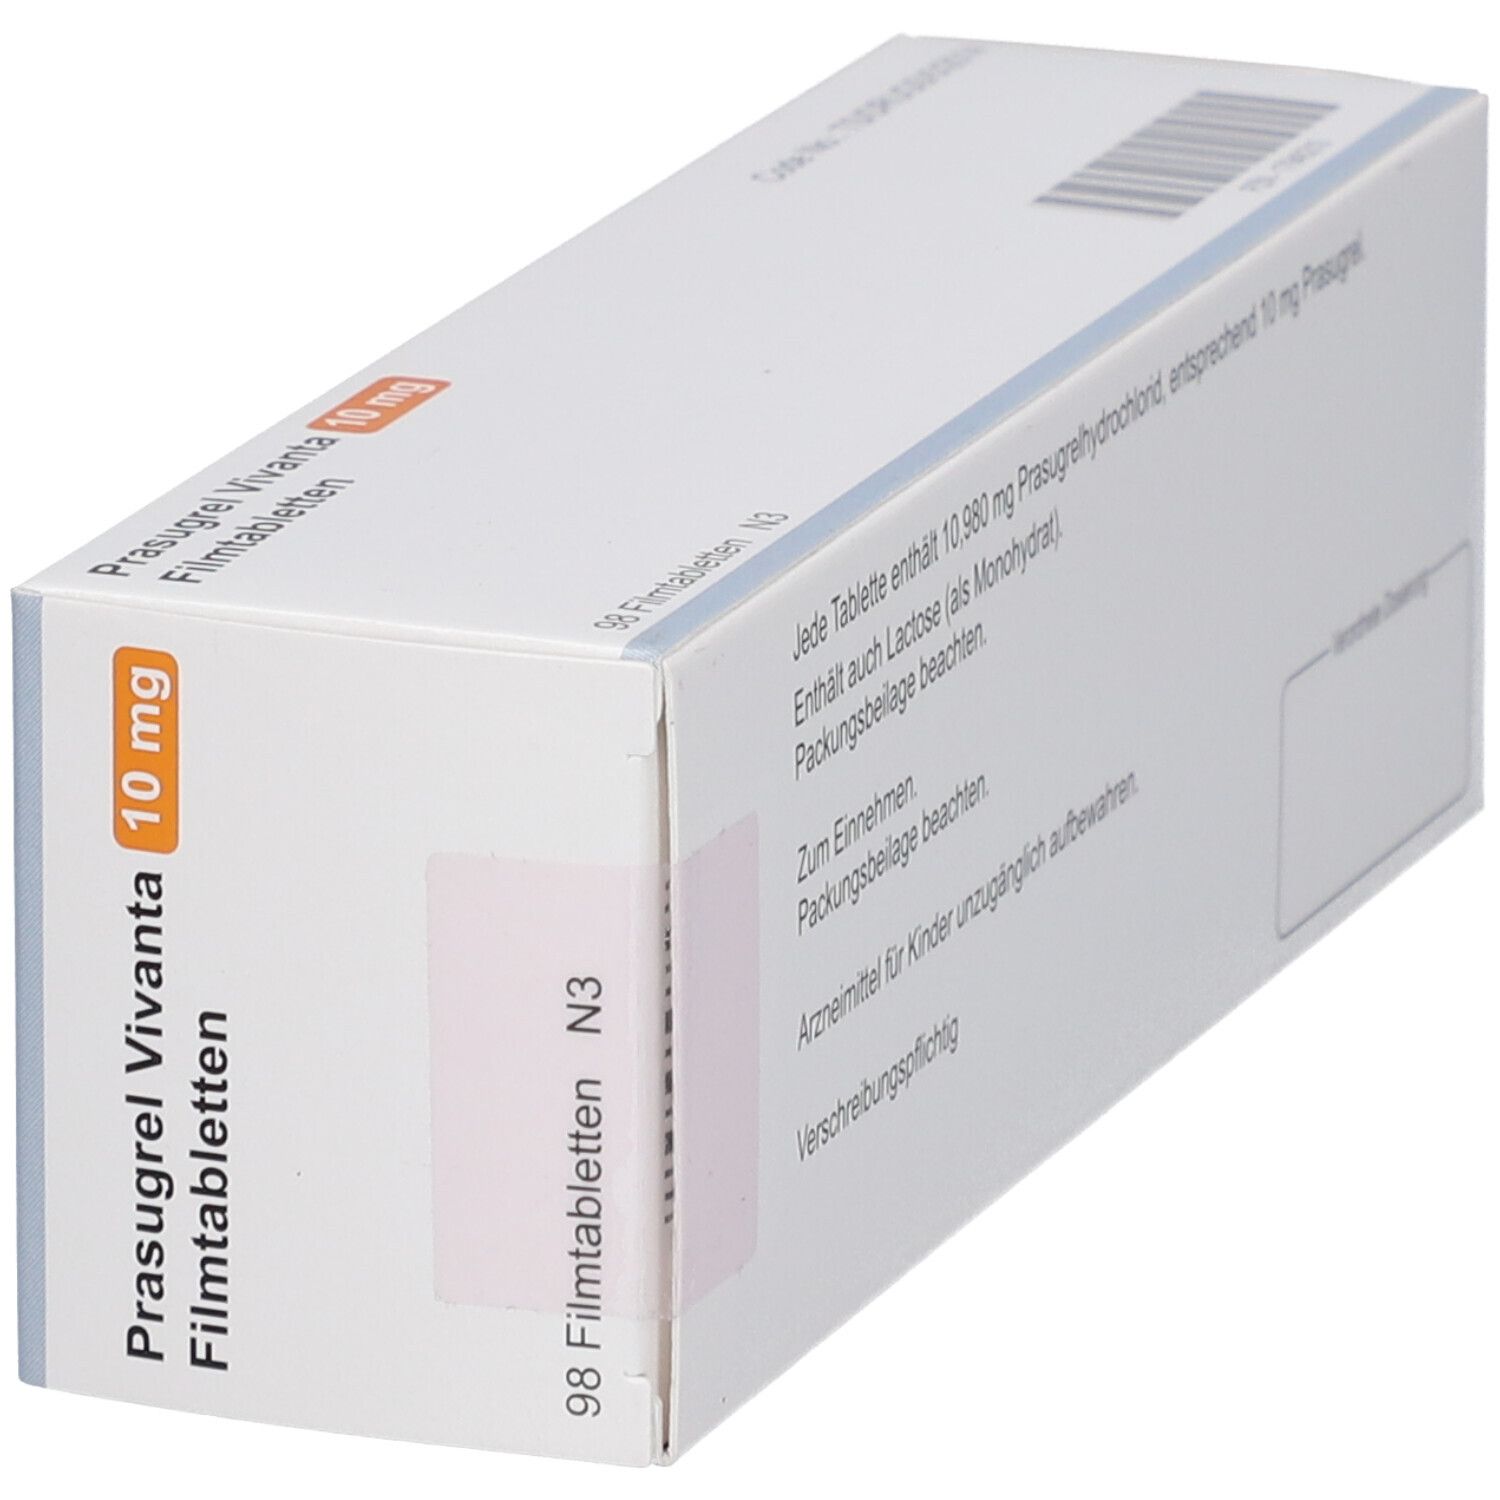 PRASUGREL Vivanta 10 mg Filmtabletten